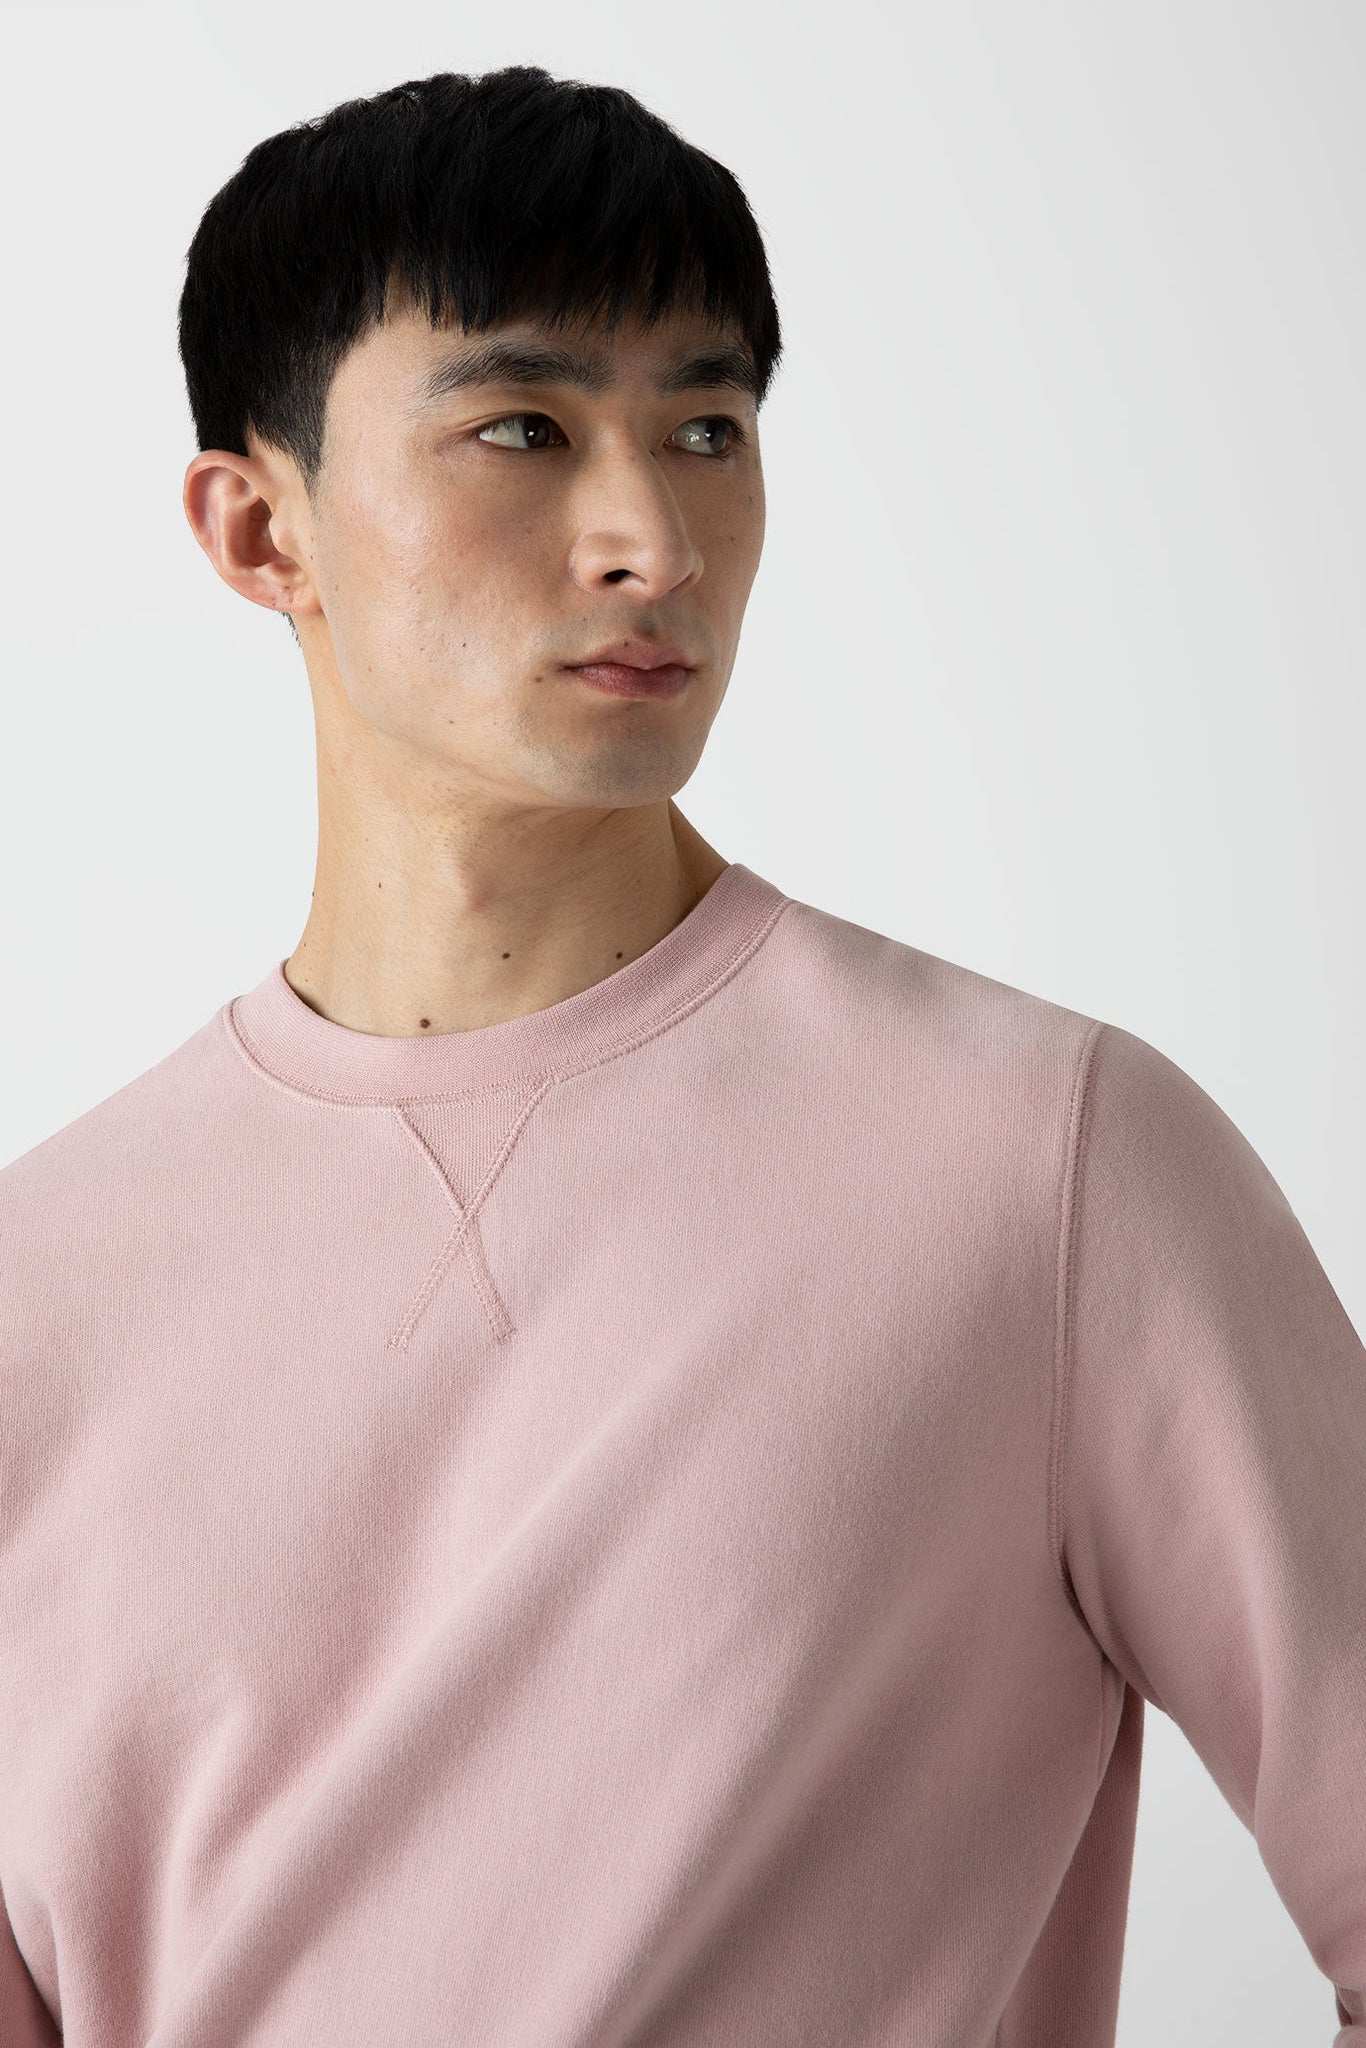 Loopback sweatshirt shell pink